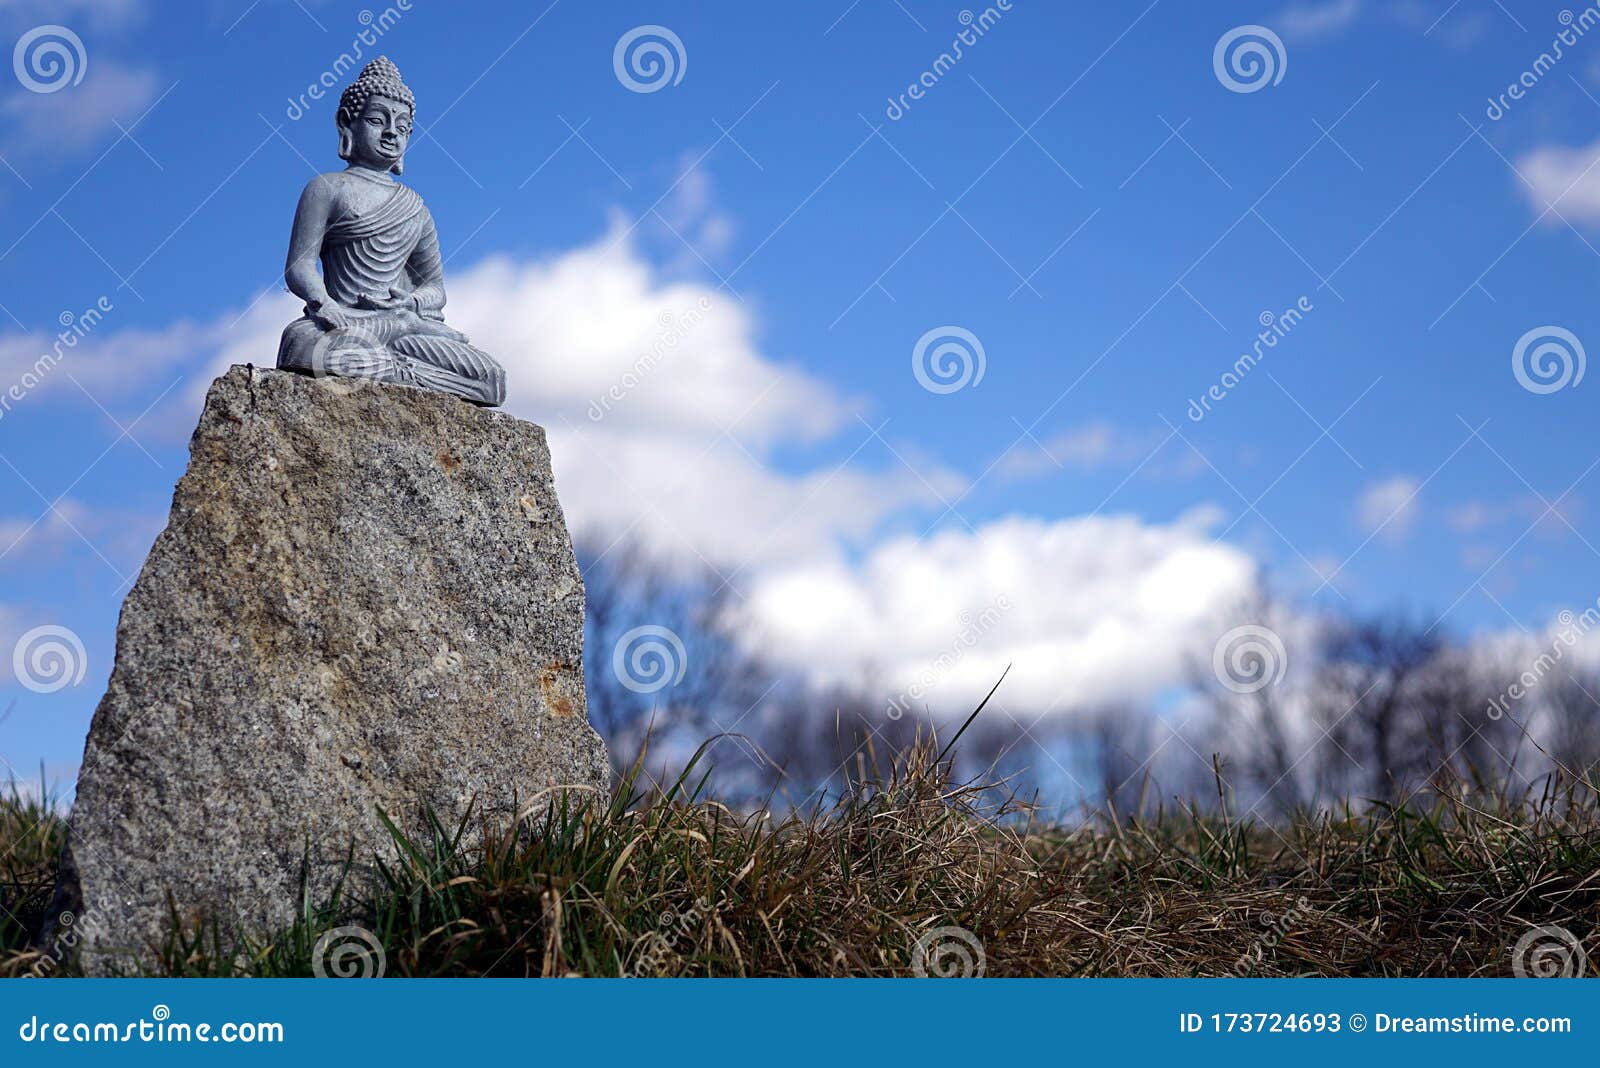 Buddha Nature on Pinterest